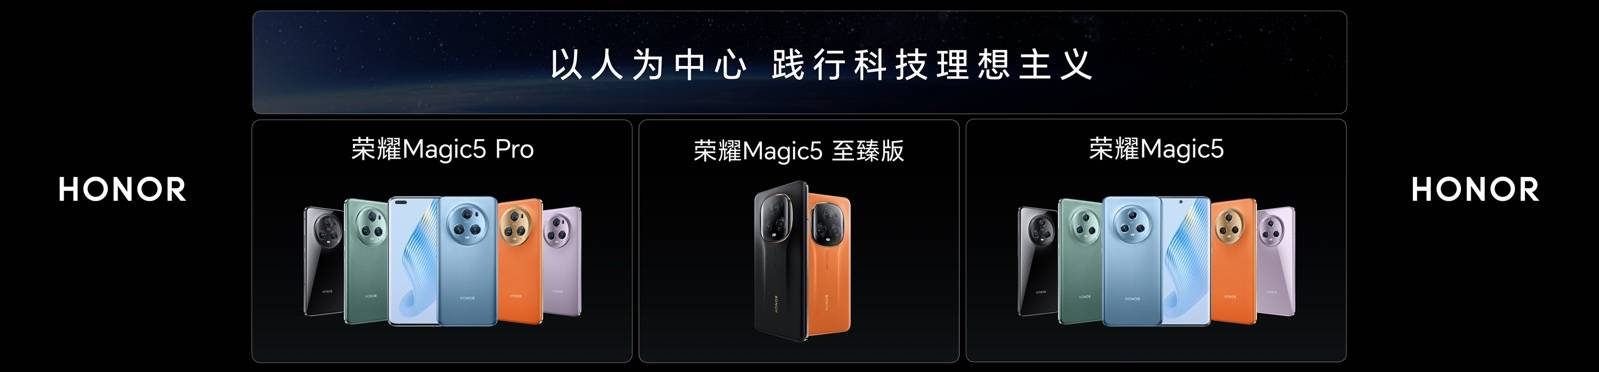 用魔法续写高端传奇 荣耀Magic5系列开启Magic时代-锋巢网